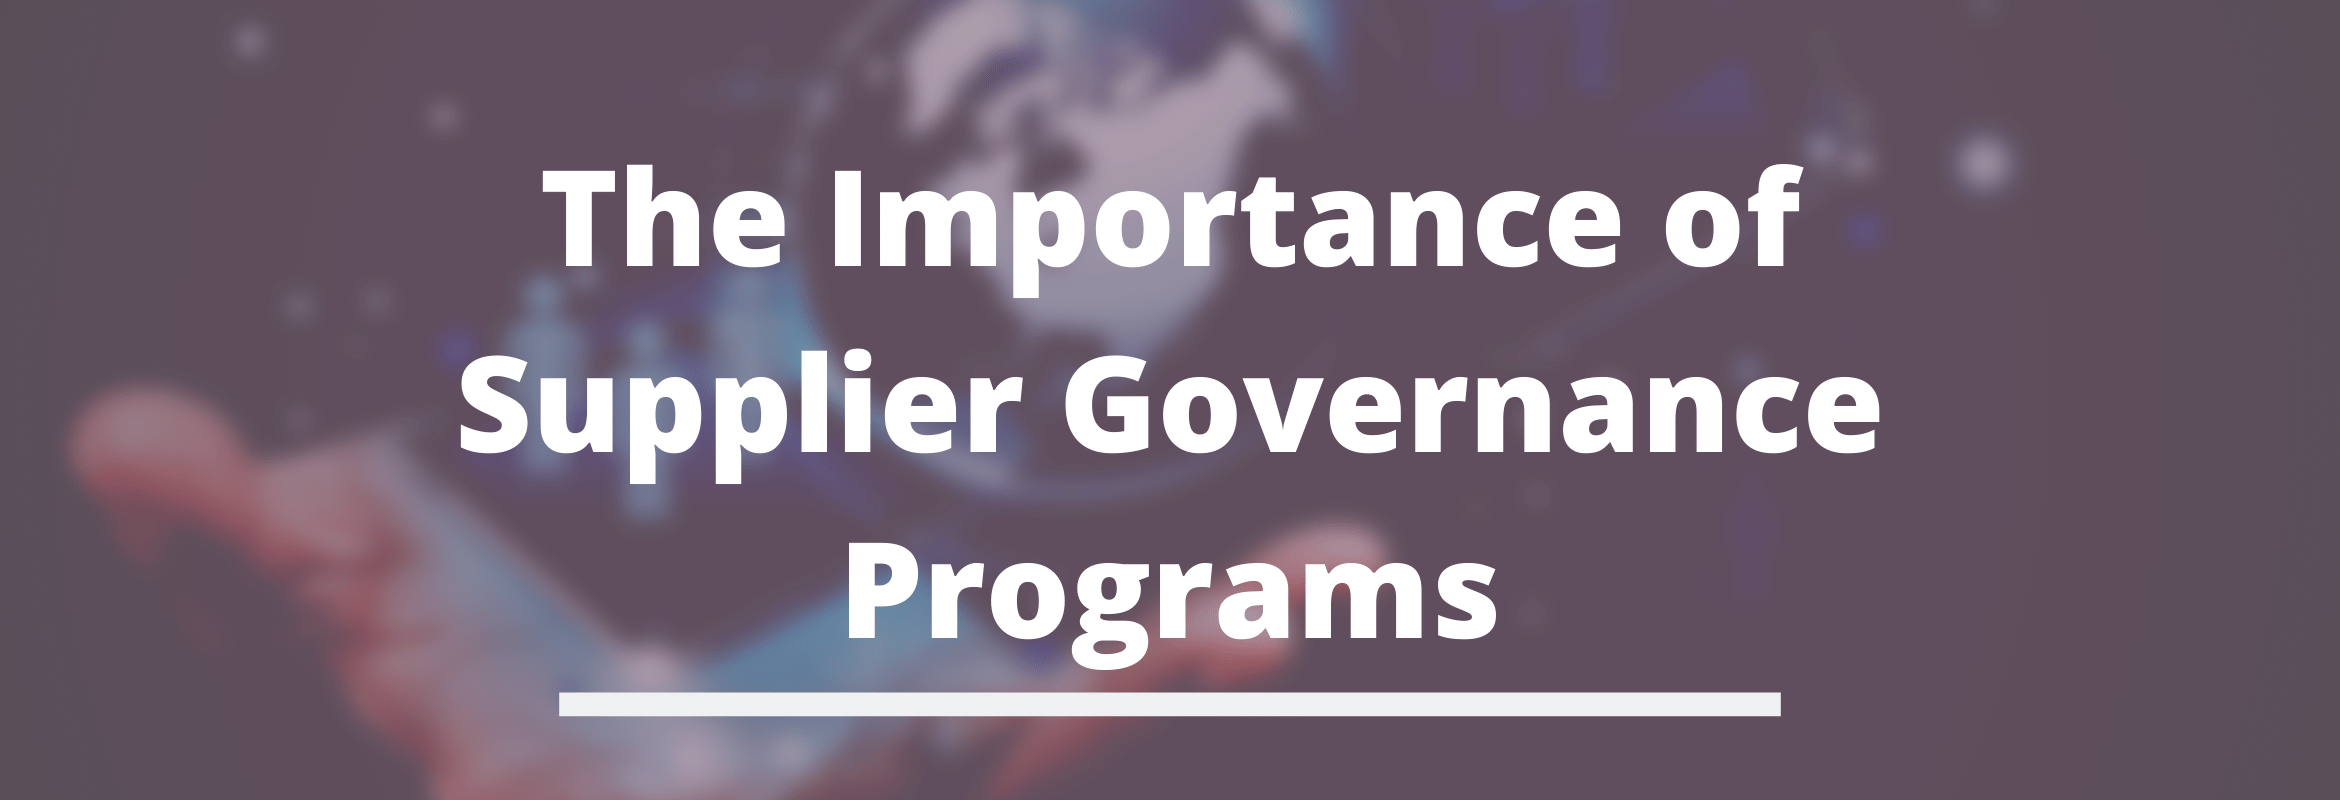 governance programs for procurement